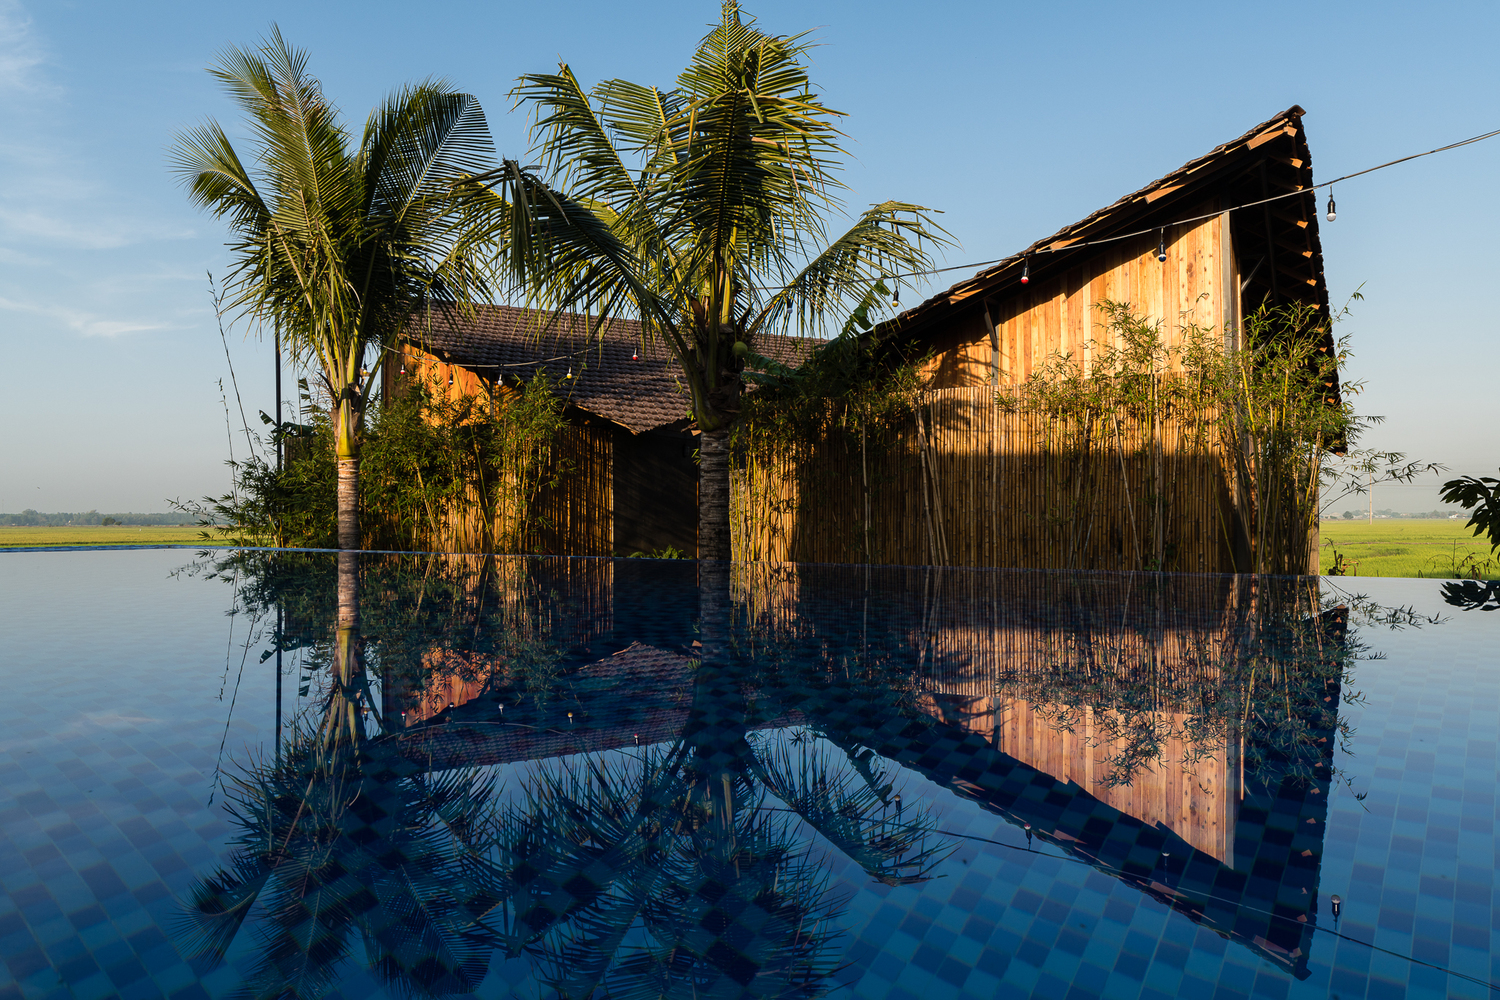 Hình ảnh cận cảnh nhà nghỉ dưỡng nhìn ra ruộng lúa, phía sau là bể bơi vô cực, rặng dừa bao quanh